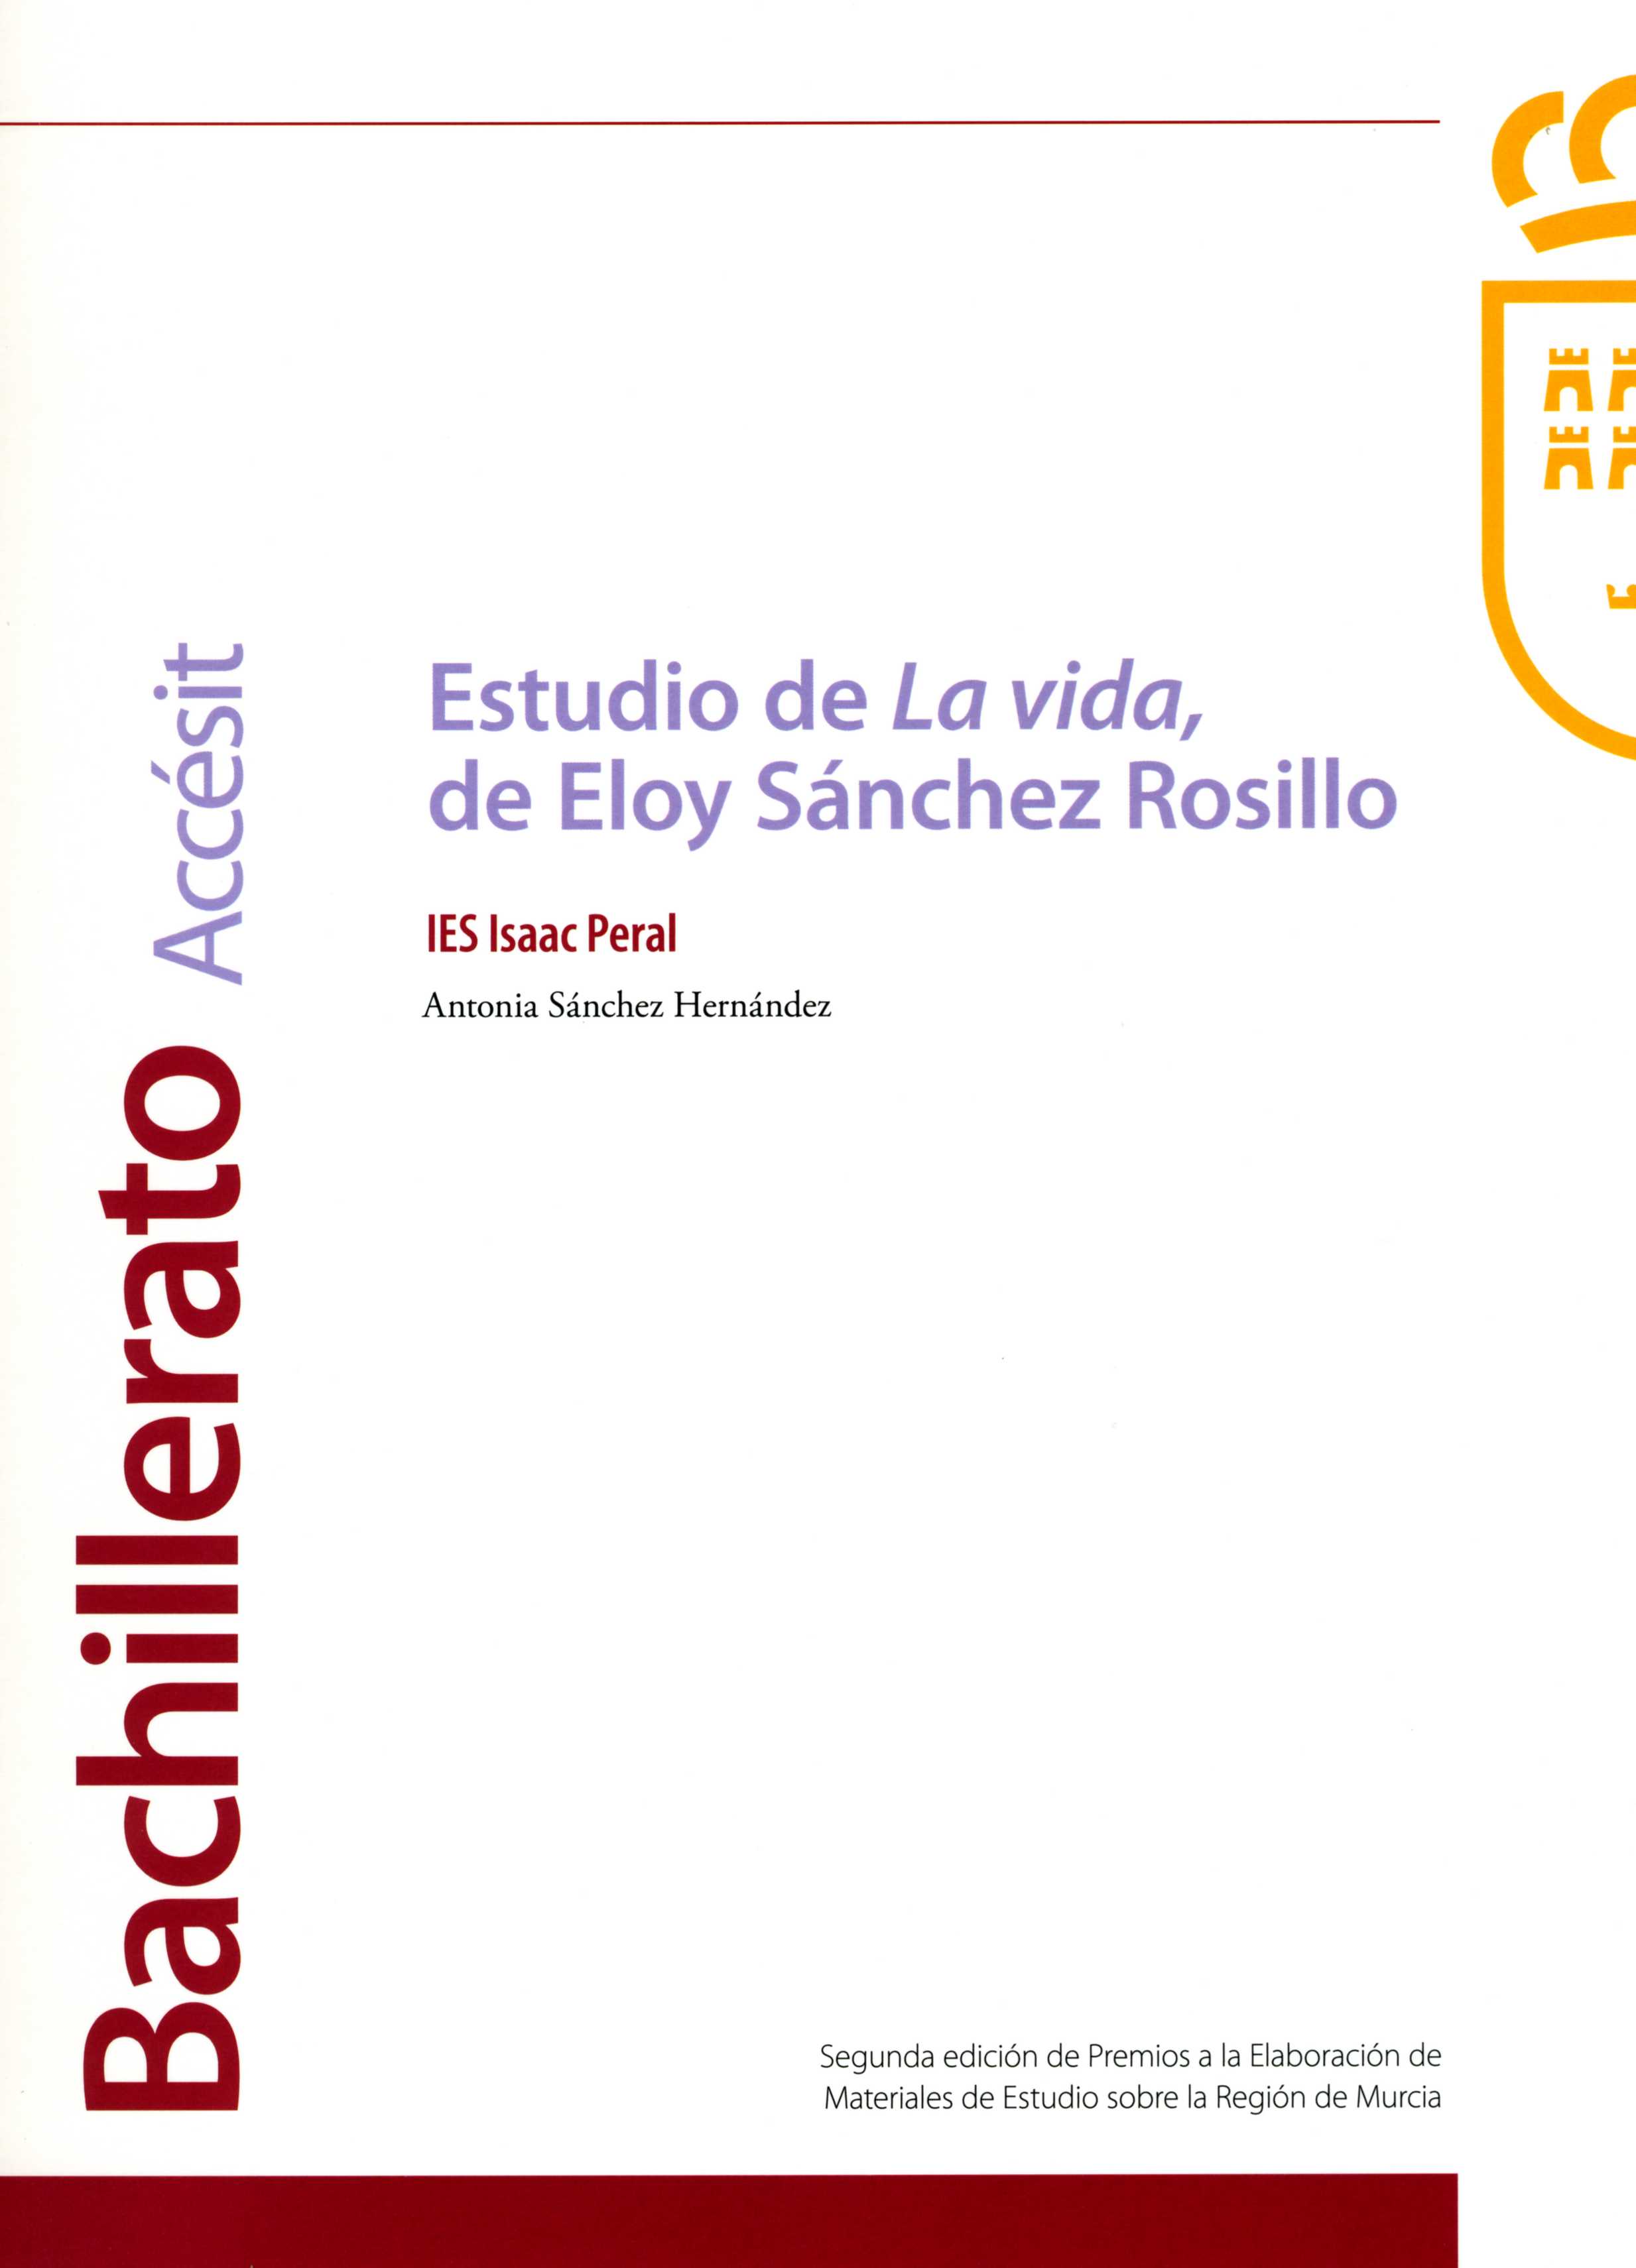 Portada de "Estudio de "La vida", de Eloy Sánchez Rosillo"